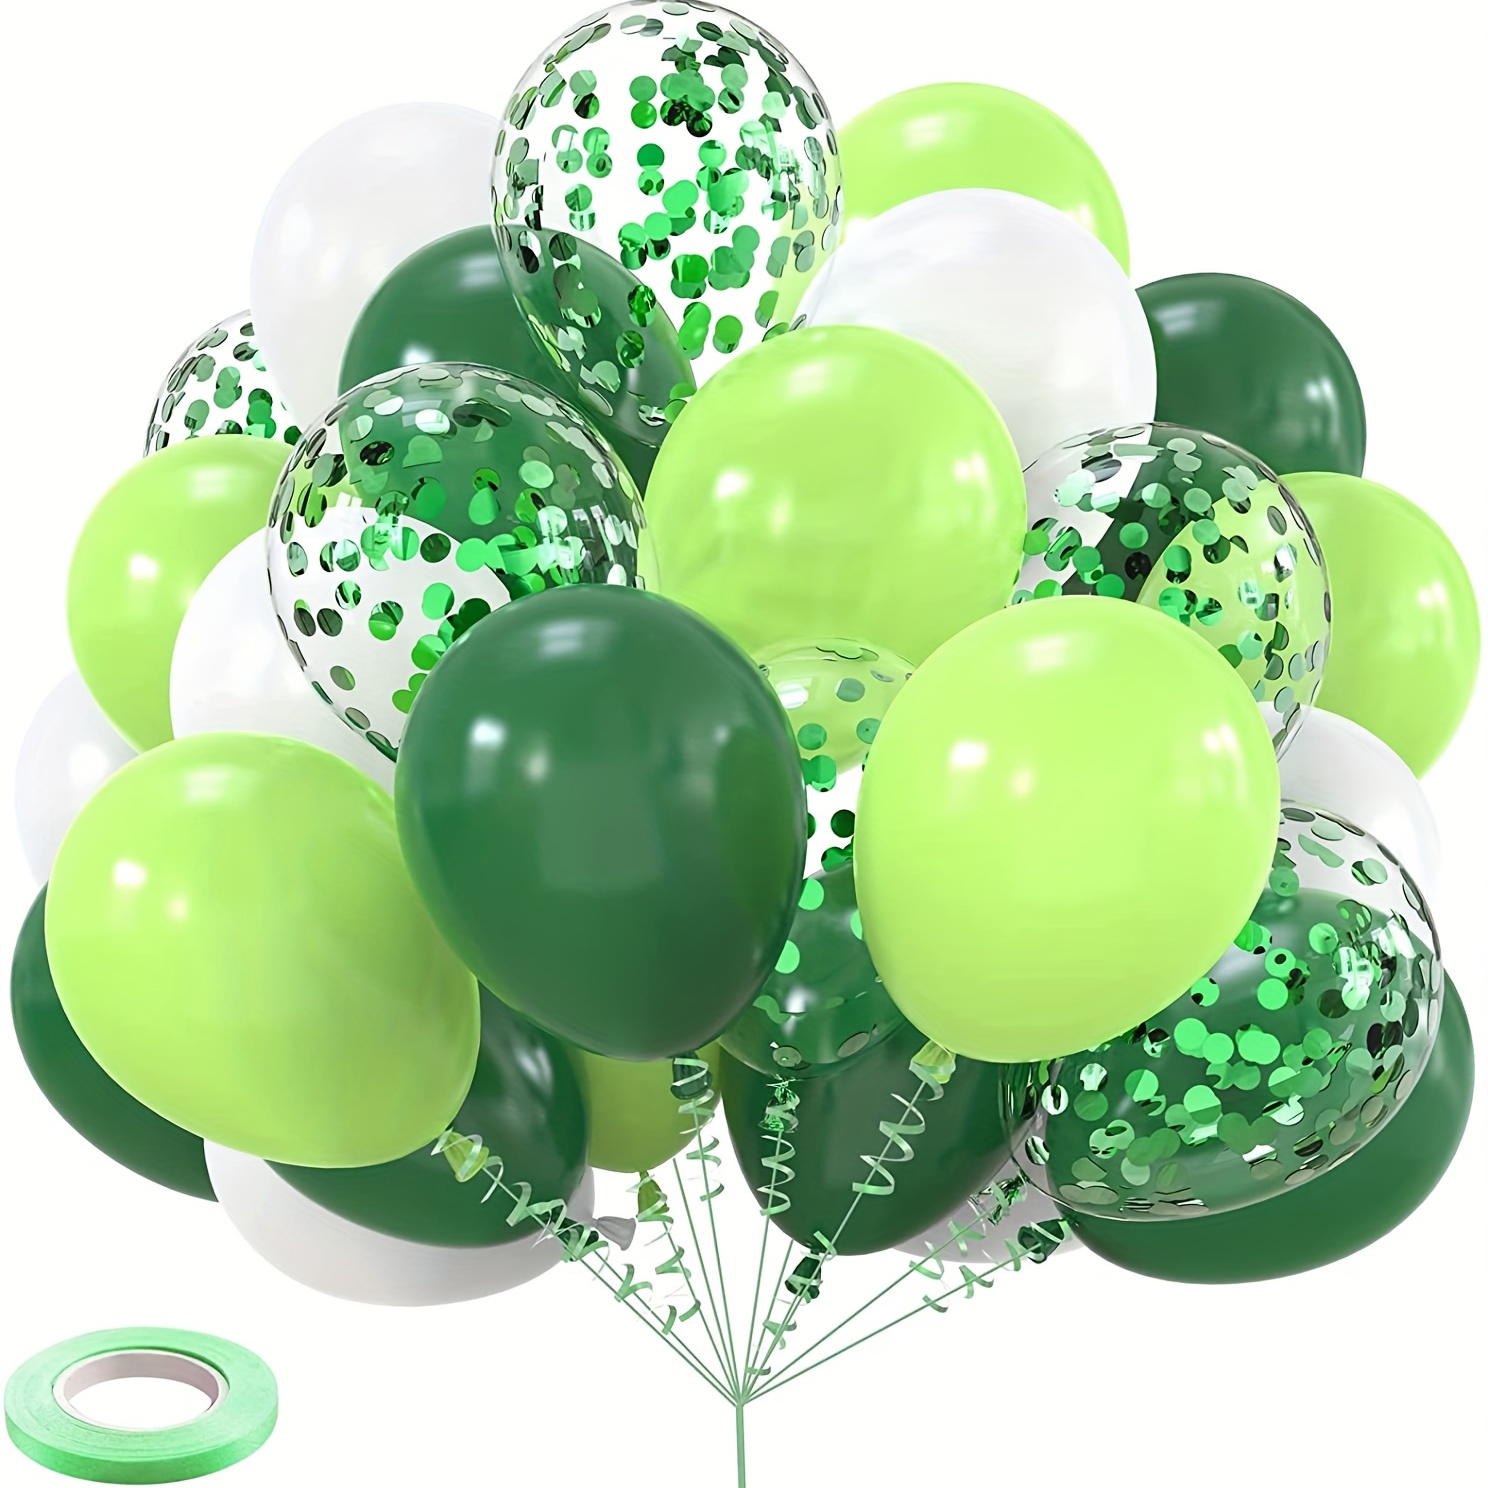 Globos 40 Cumpleaños Verdes,Decoracion 40 Cumpleaños con Globos de